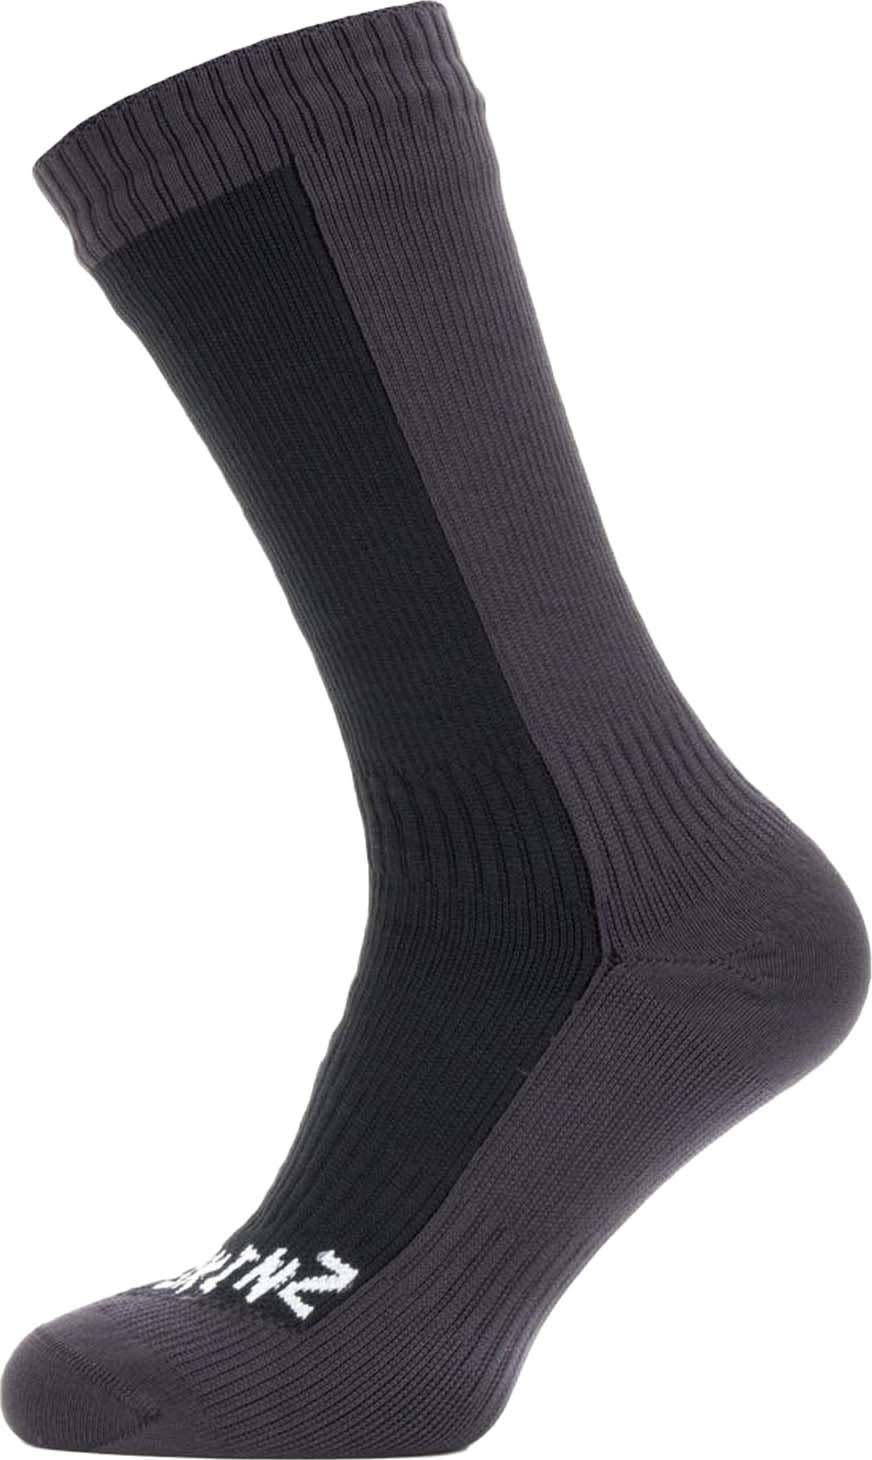 Waterproof Cold Weather Mid Length Sock Dark Grey/Black